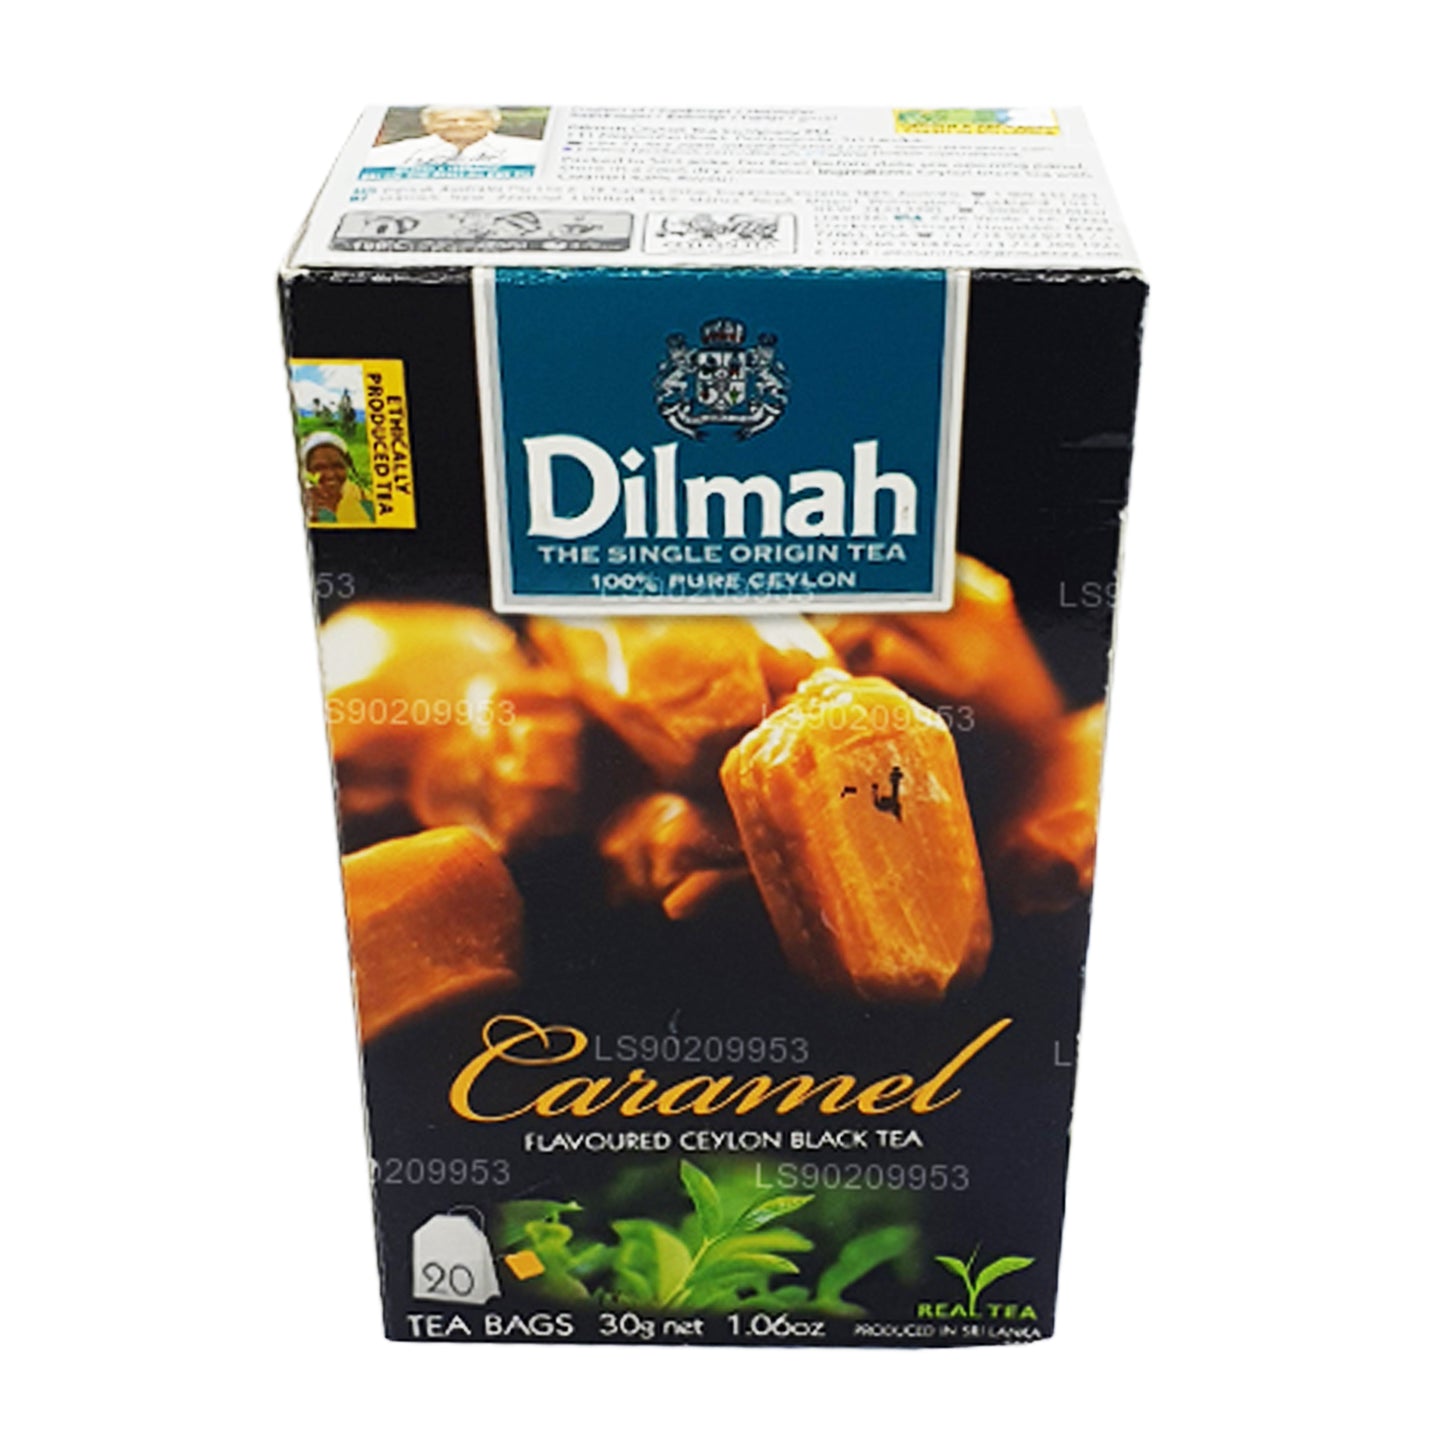 Té Dilmah con sabor a caramelo (40 g) 20 bolsitas de té